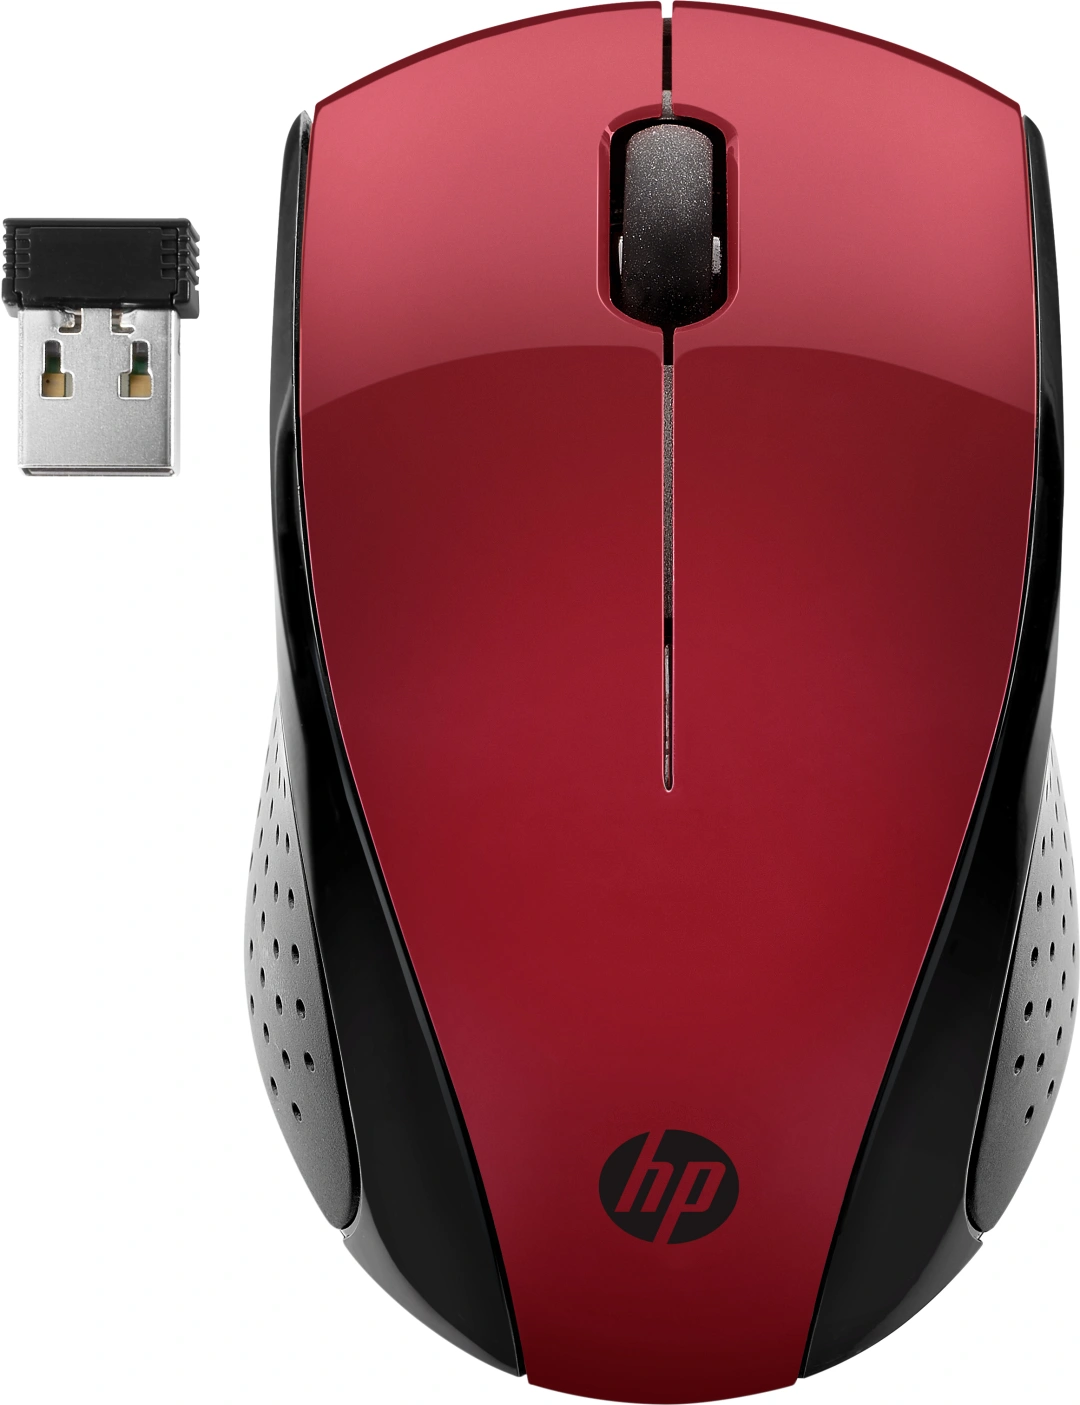 HP 220 Silent bezdrátová myš/red